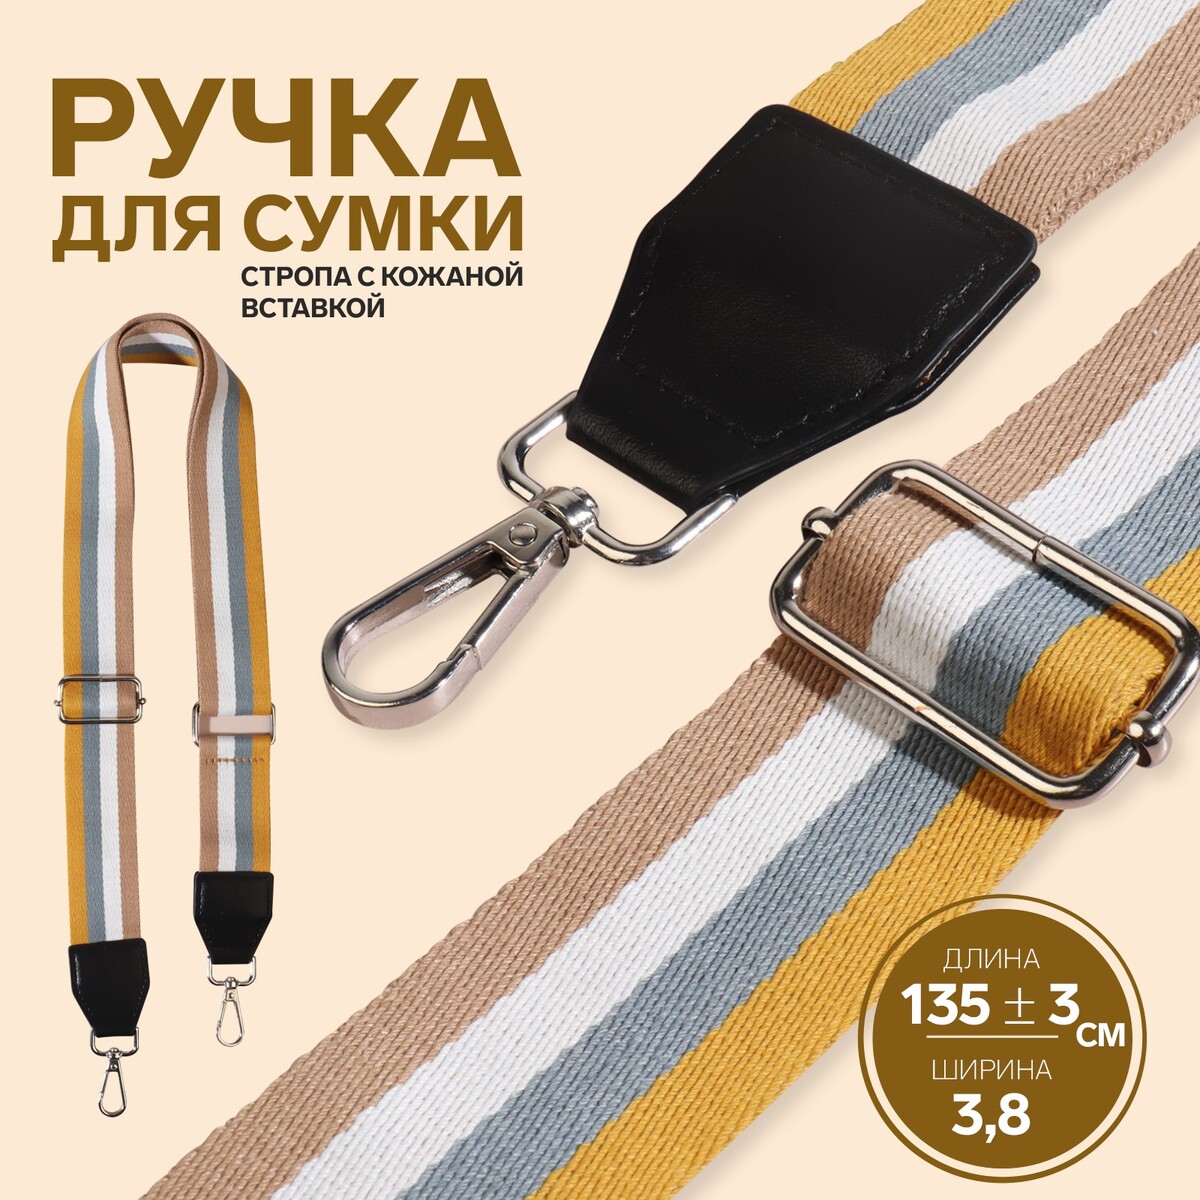 Ручка для сумки, стропа с кожаной вставкой, 135 ± 3 × 3,8 см, цвет желтый/серый/белый/бежевый